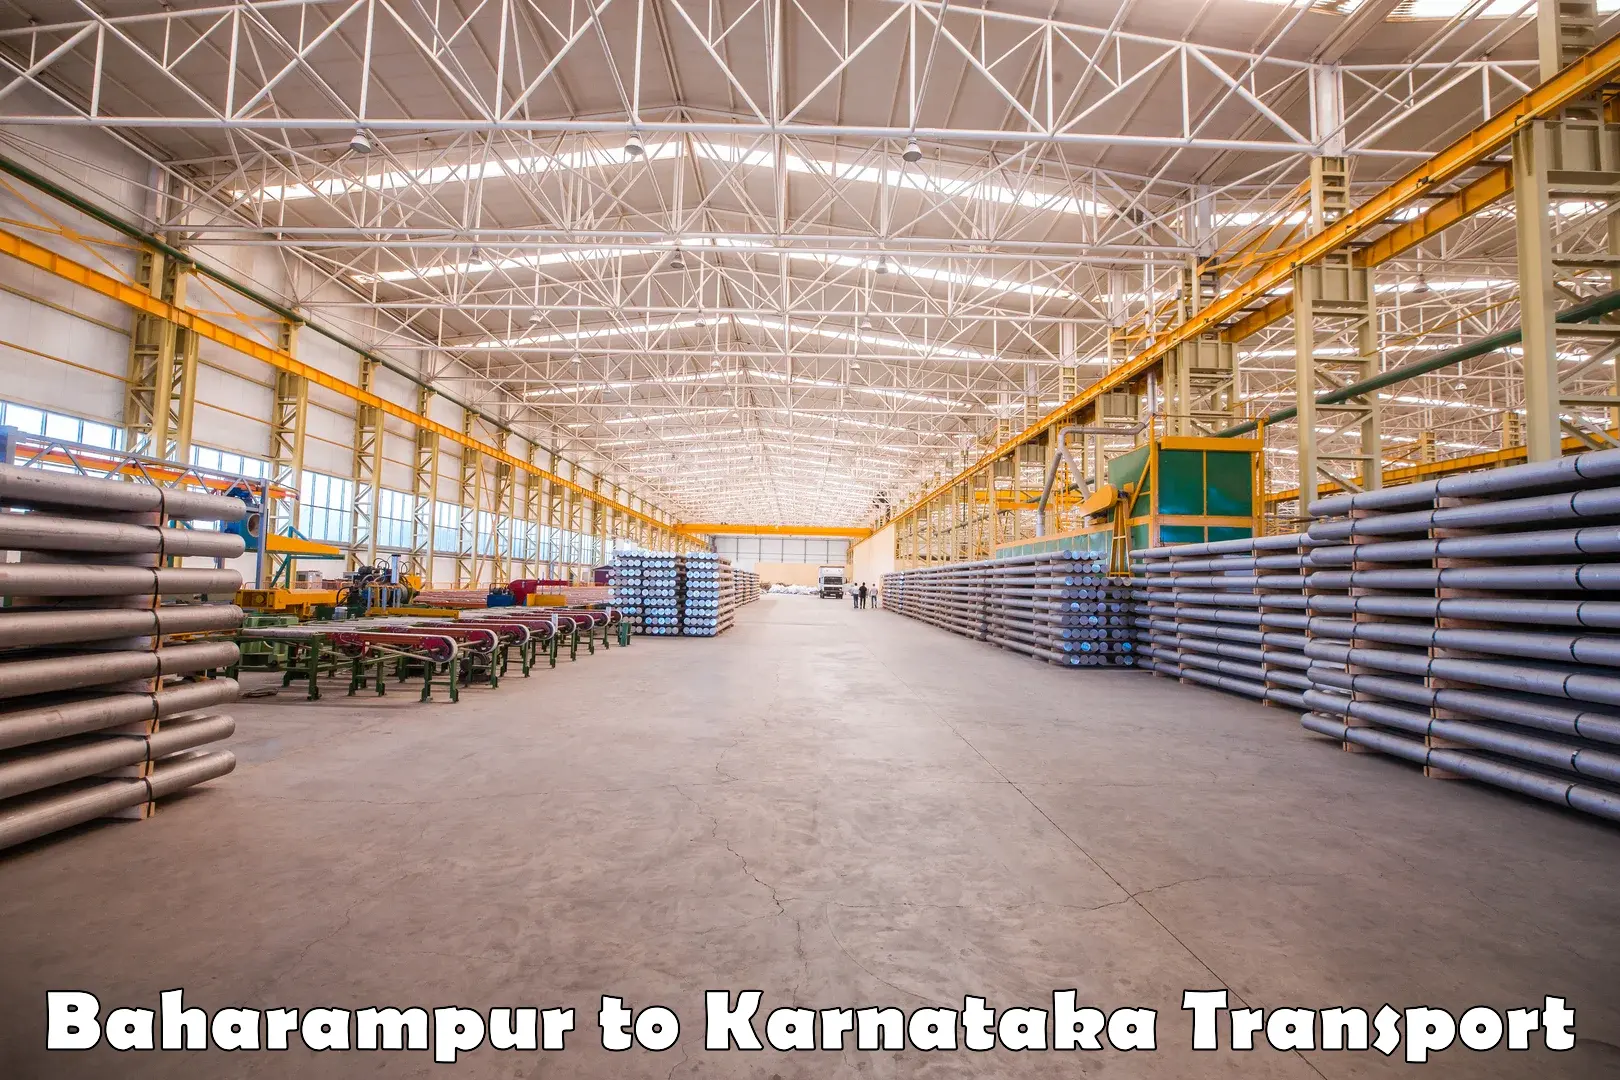 Interstate transport services Baharampur to Karnataka